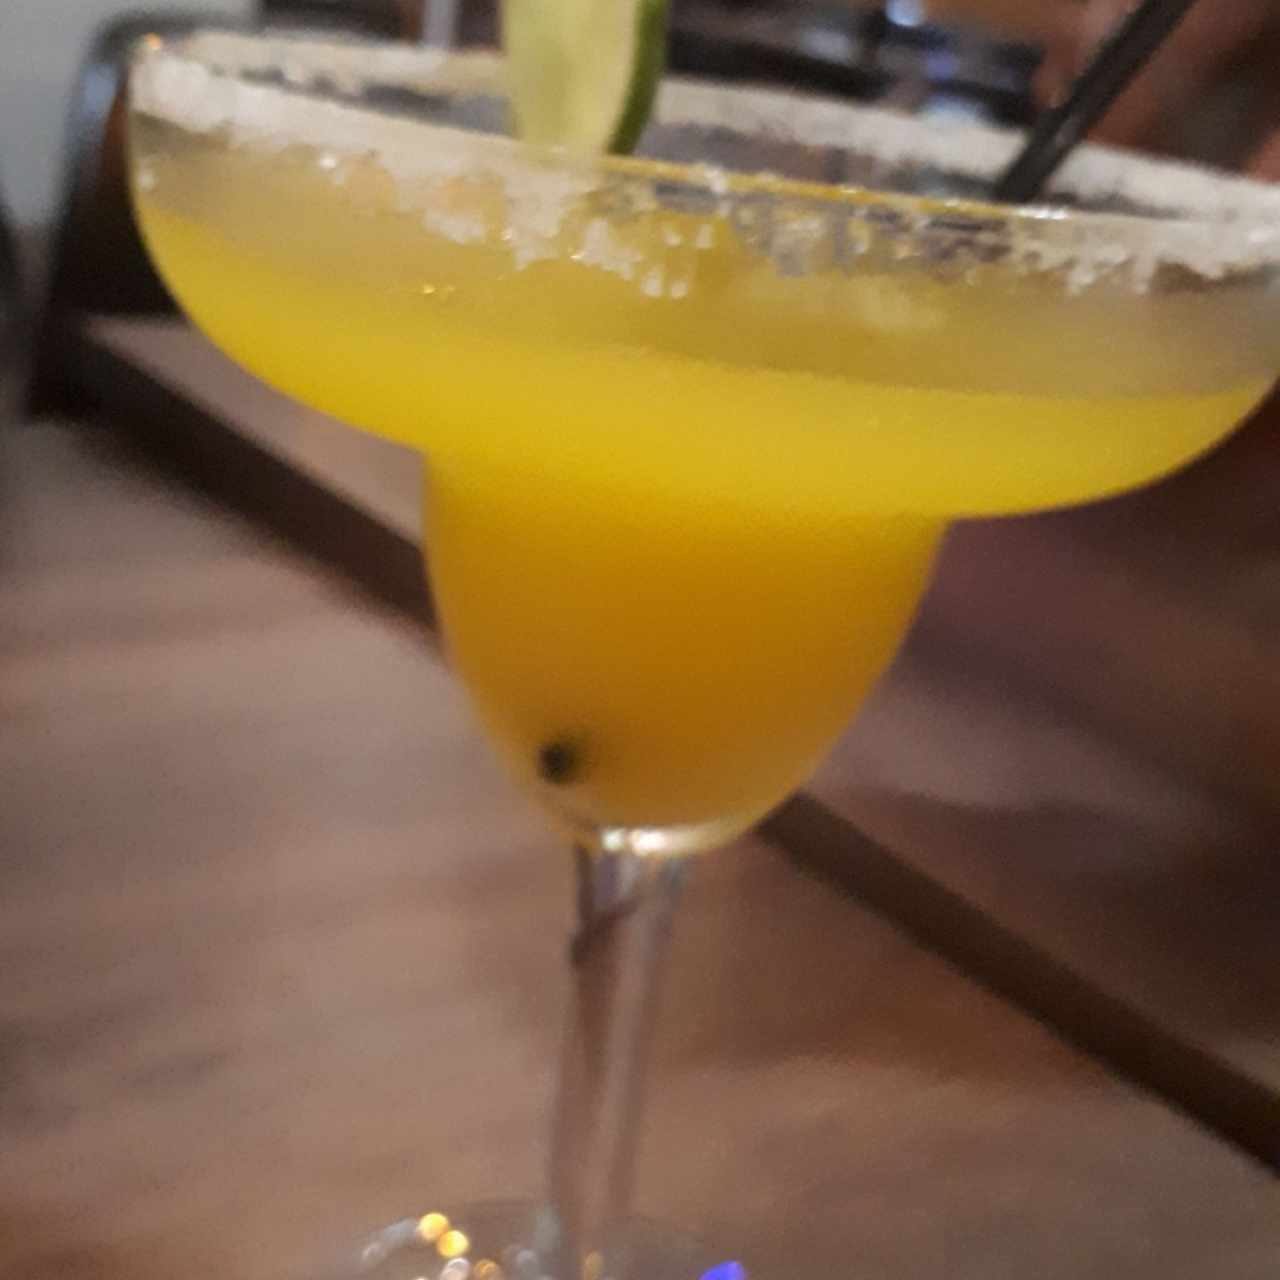 Margarita de mango